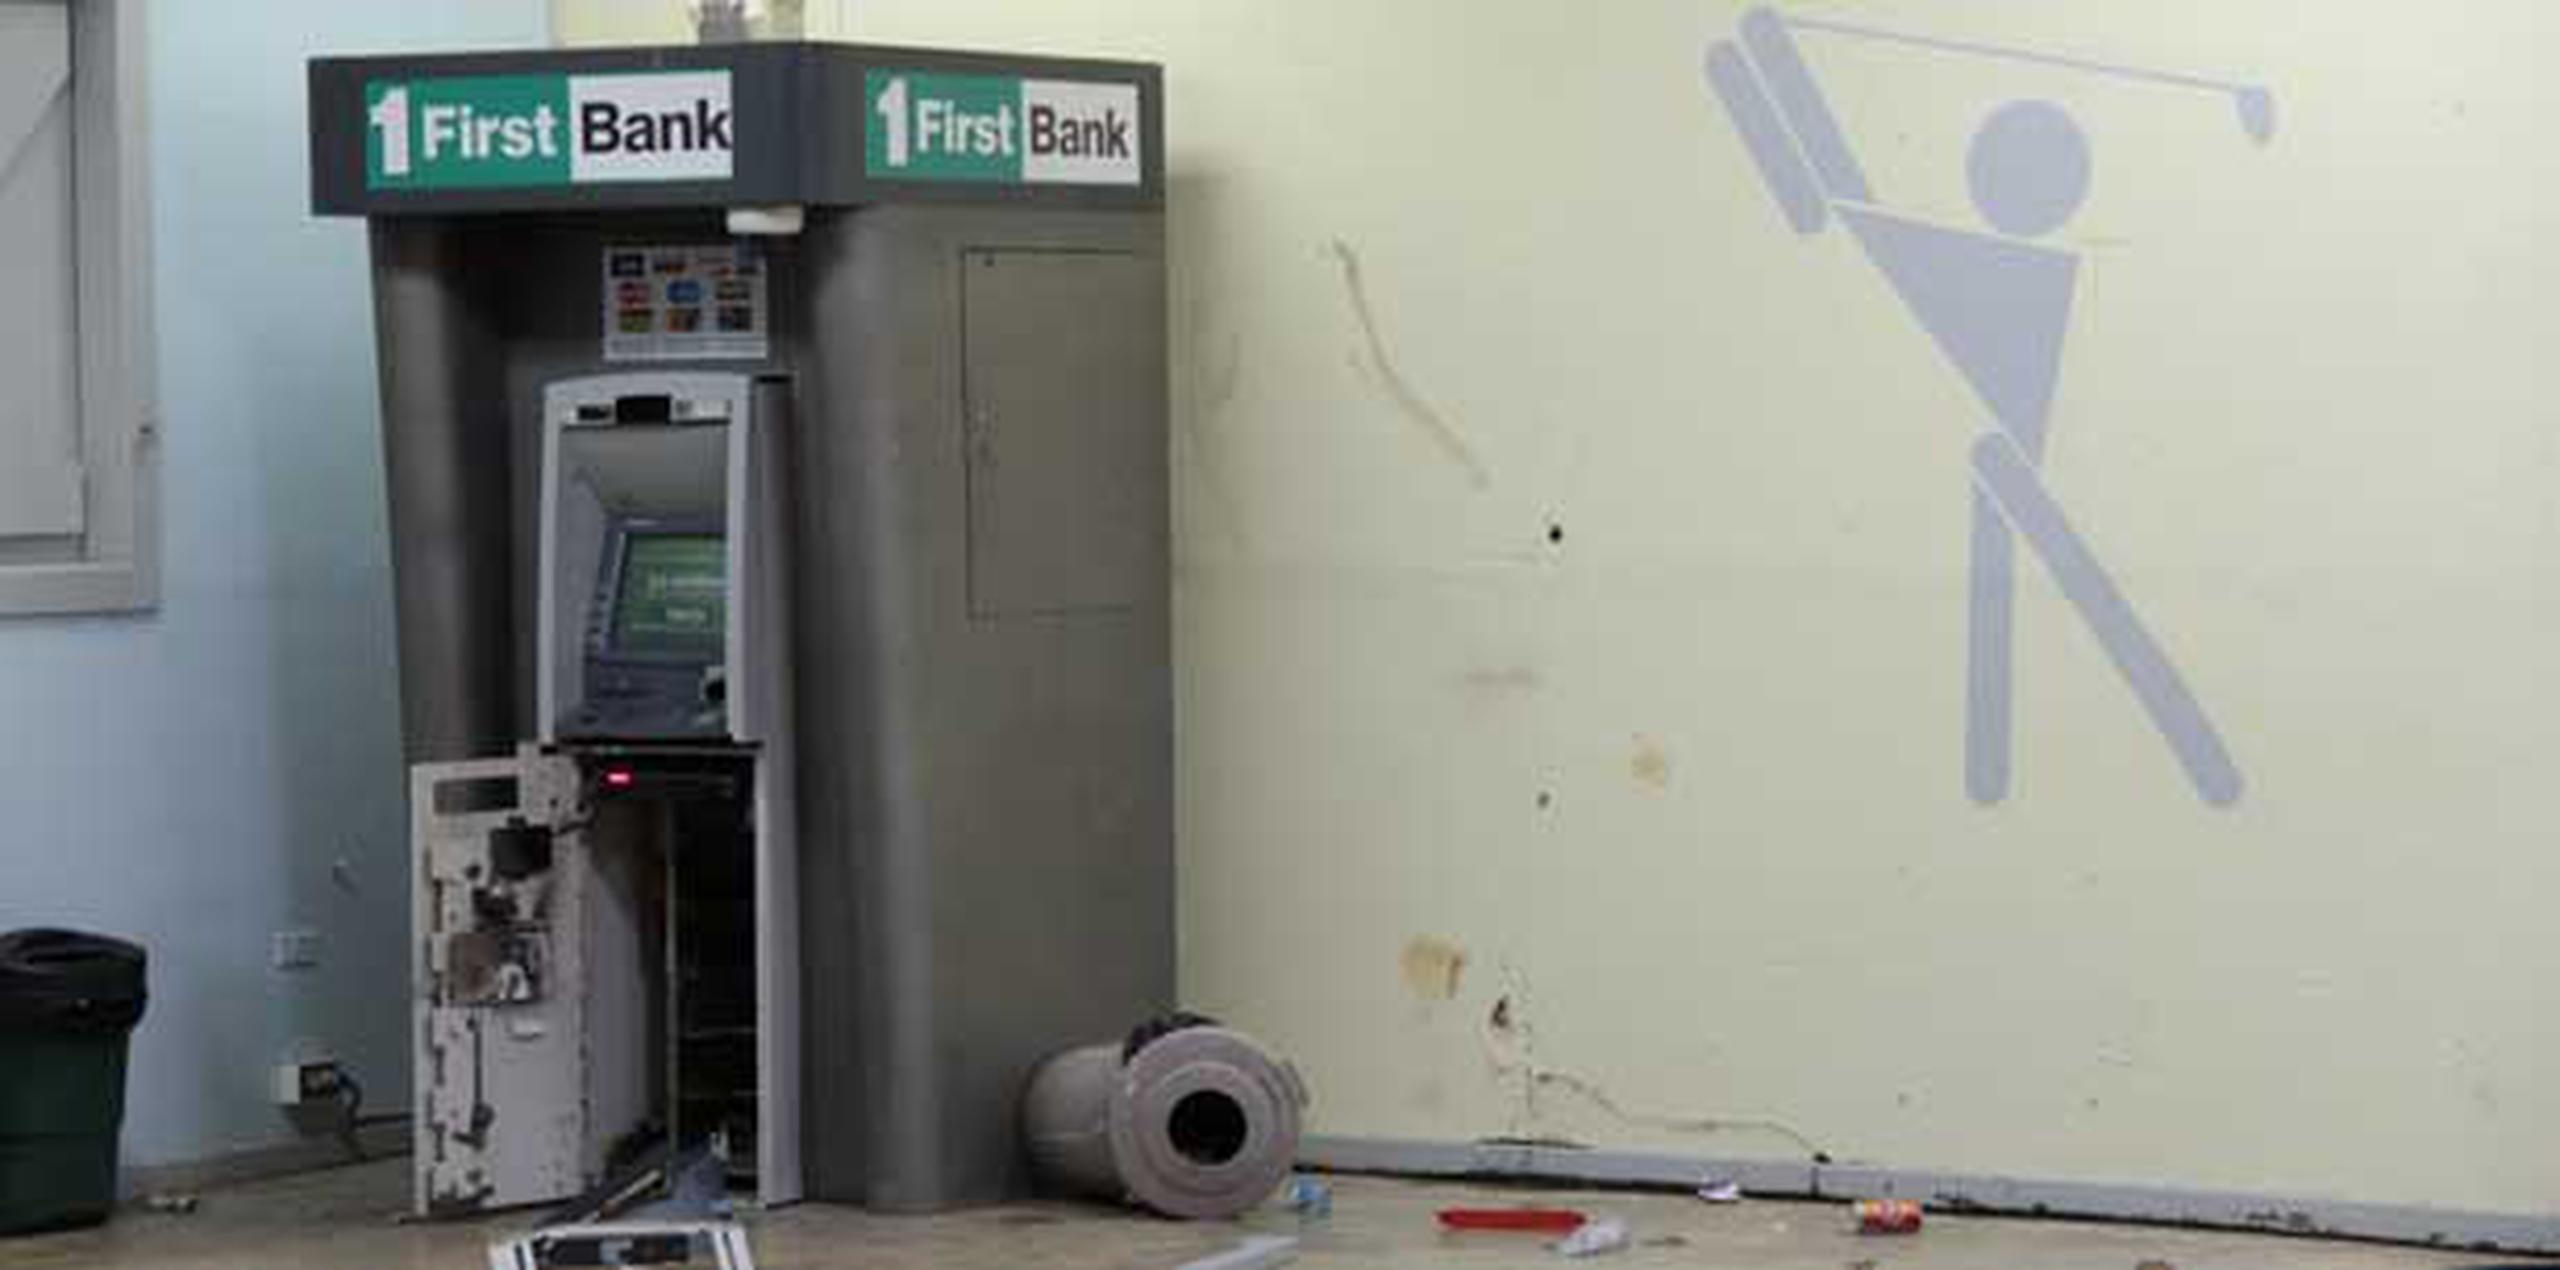 Los individuos utilizaron un equipo de acetileno que tenían en una mochila para abrir la máquina ATM. (alex.figueroa@gfrmedia.com)